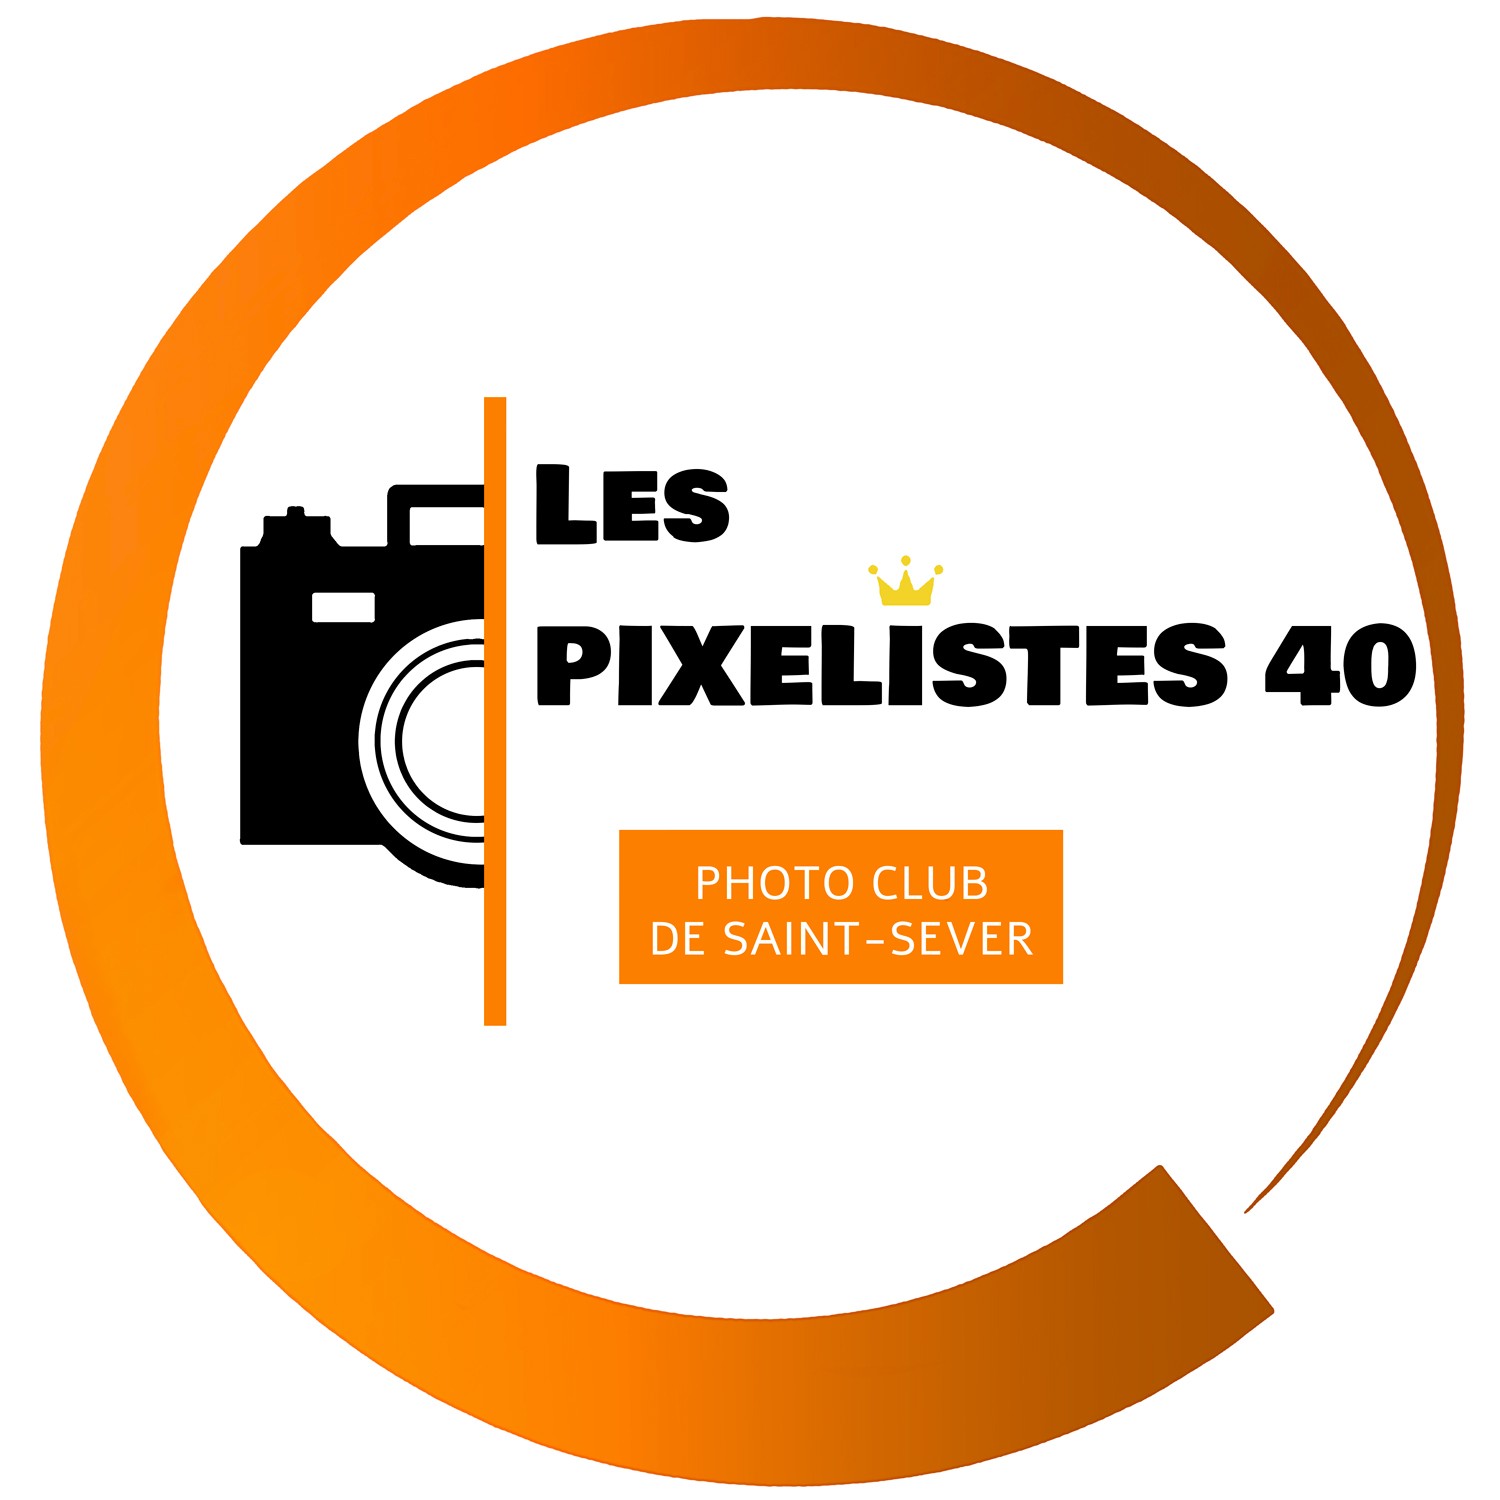 Les Pixelistes 40